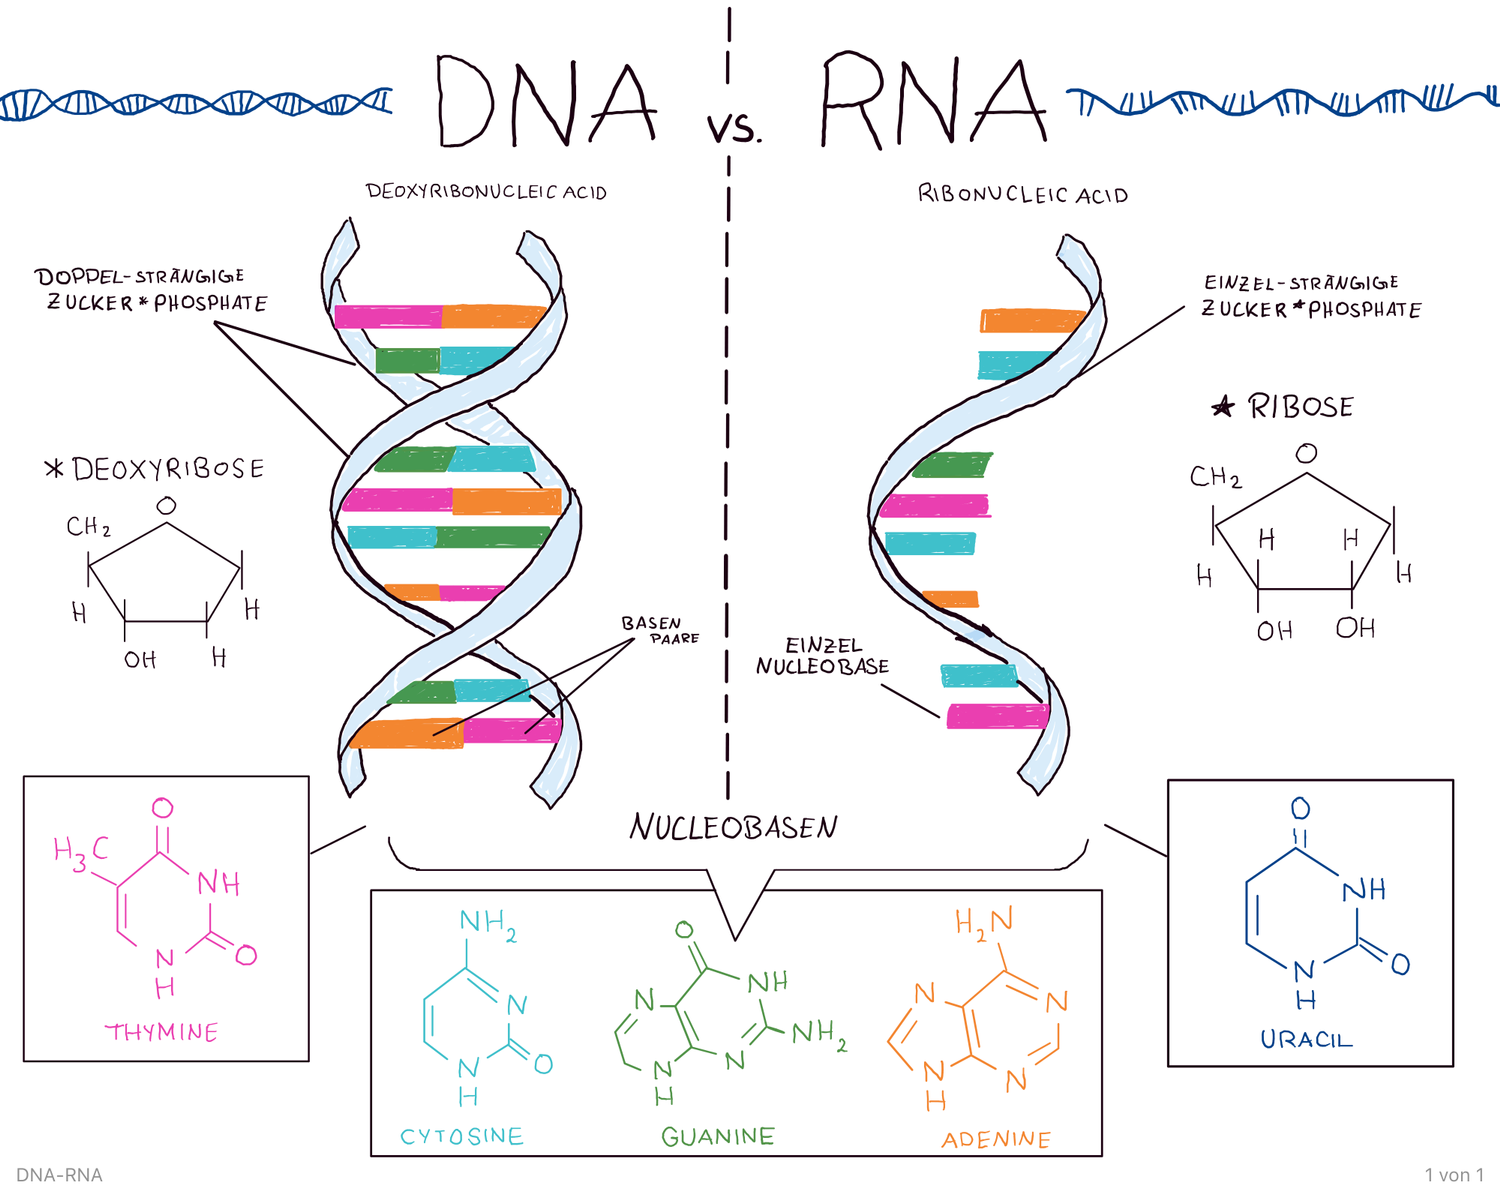 ДНК И РНК. ДНК И РНК кратко. ДНК И РНК отличия. Строение ДНК И РНК. Сравнить днк и рнк